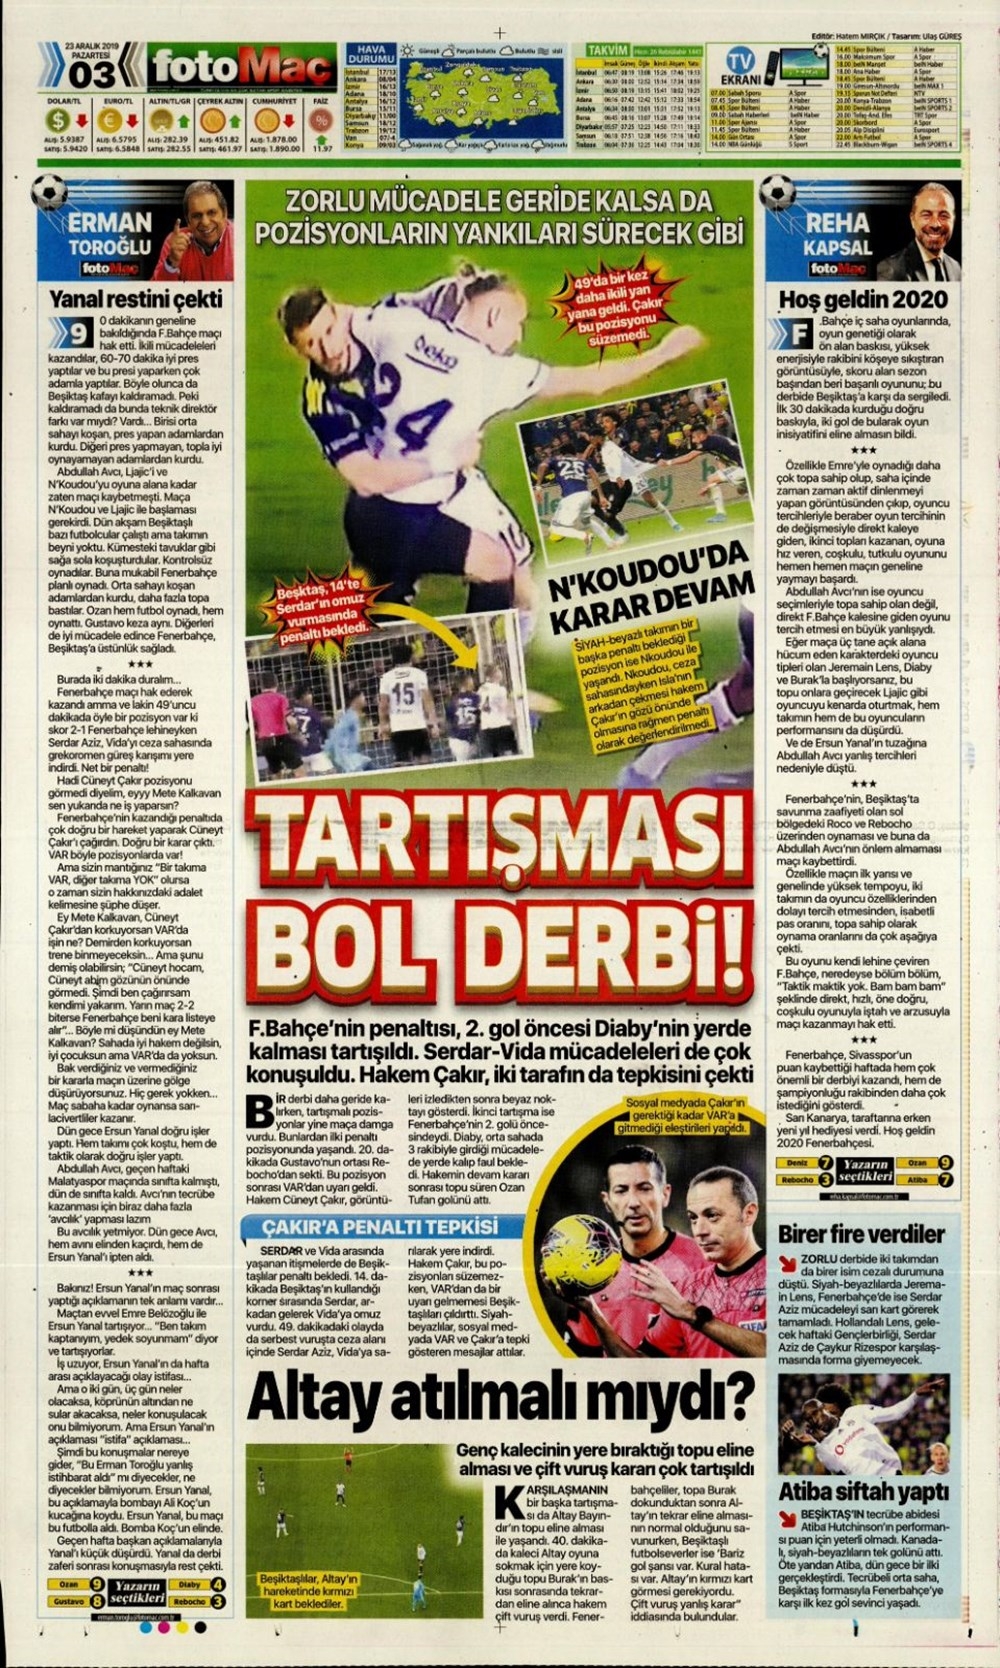 Günün spor manşetleri (23 Aralık 2019) Kadıköy’de Fener alayı 25